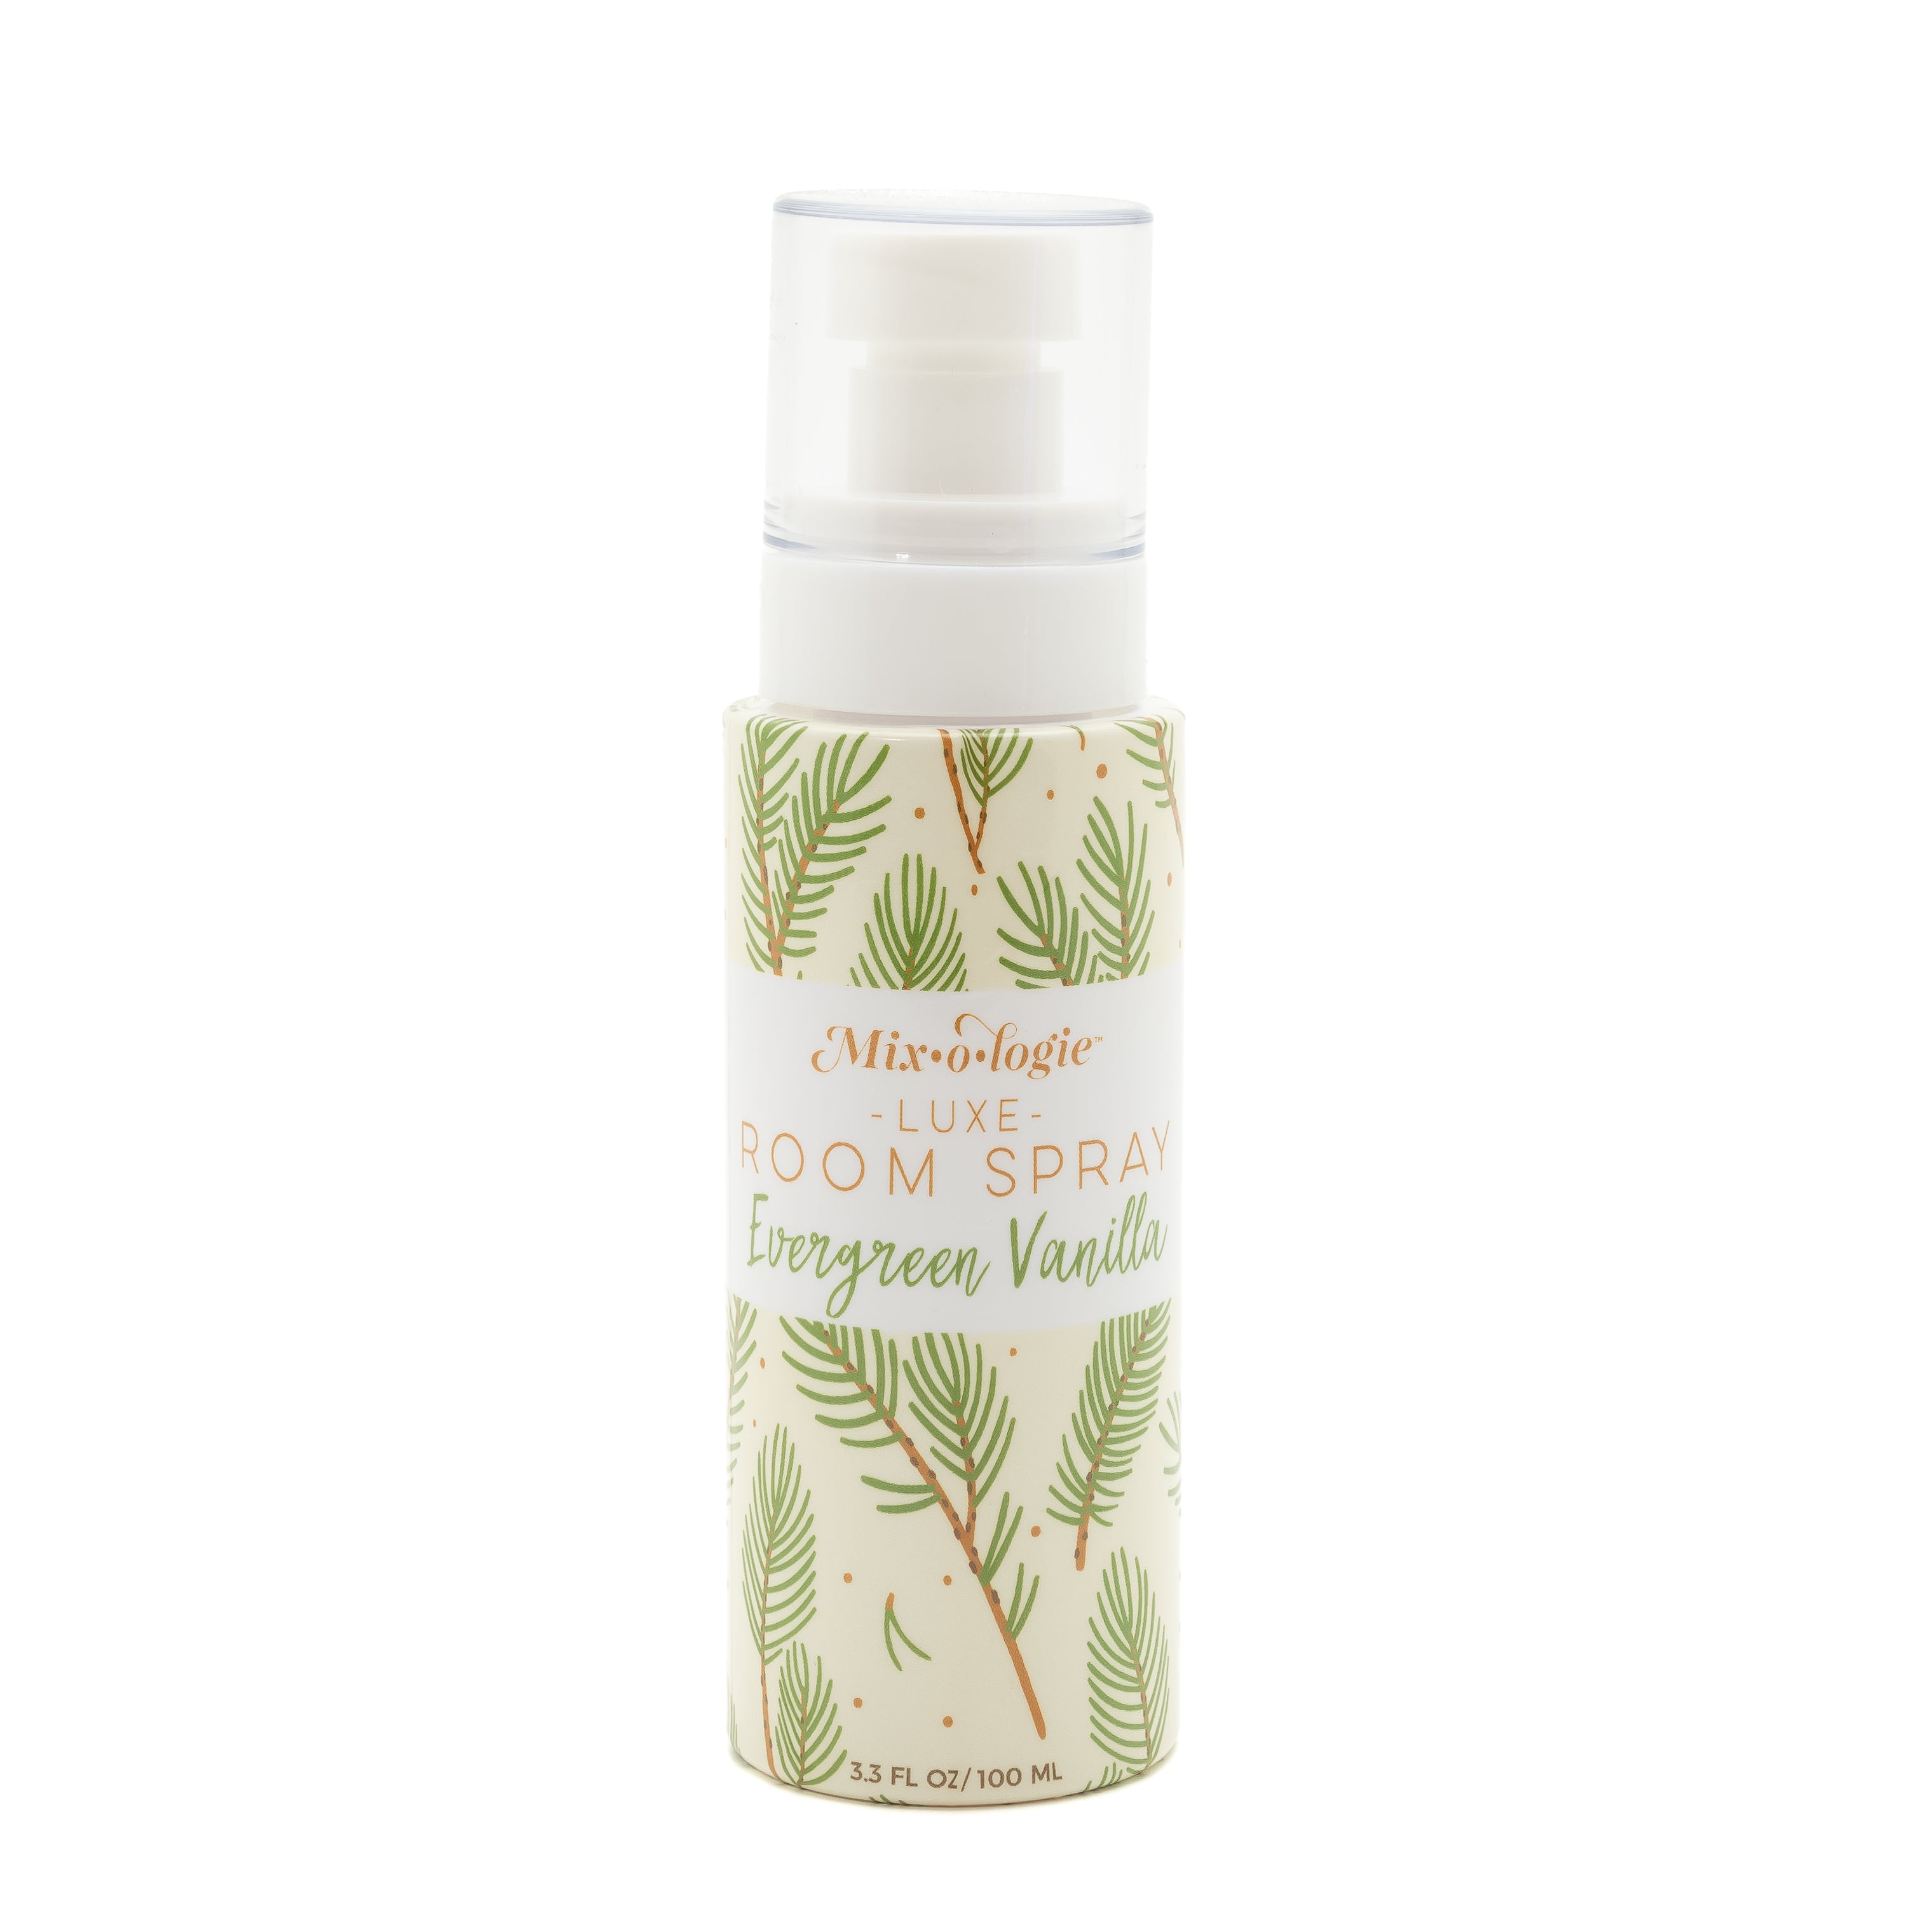 Evergreen Vanilla Room Spray